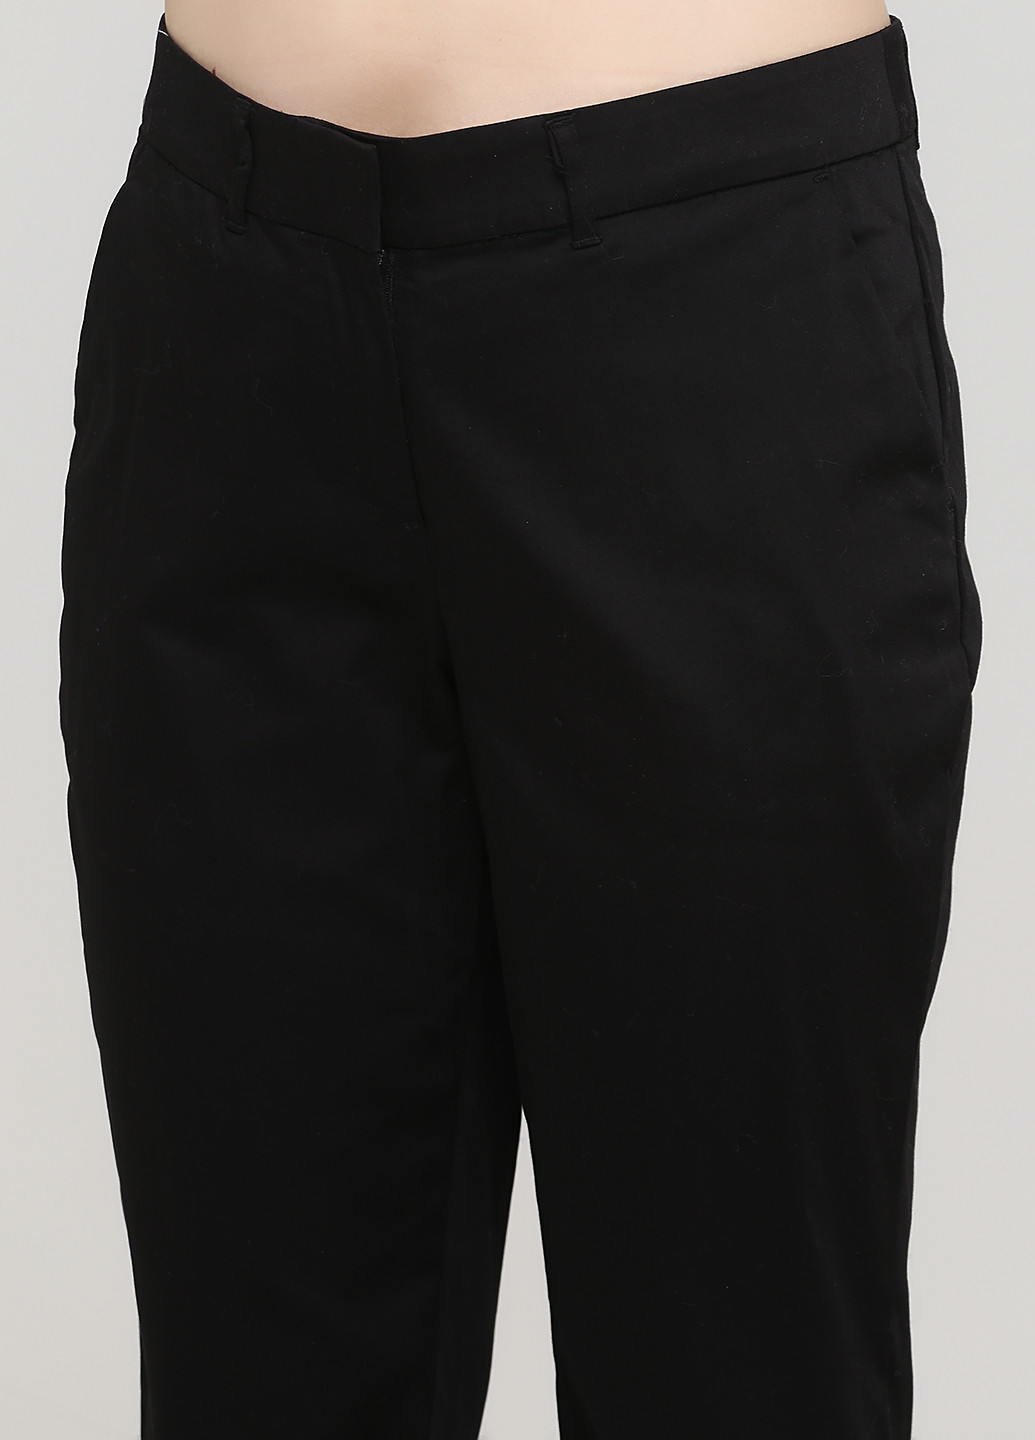 Черные классические демисезонные зауженные, укороченные брюки Signature